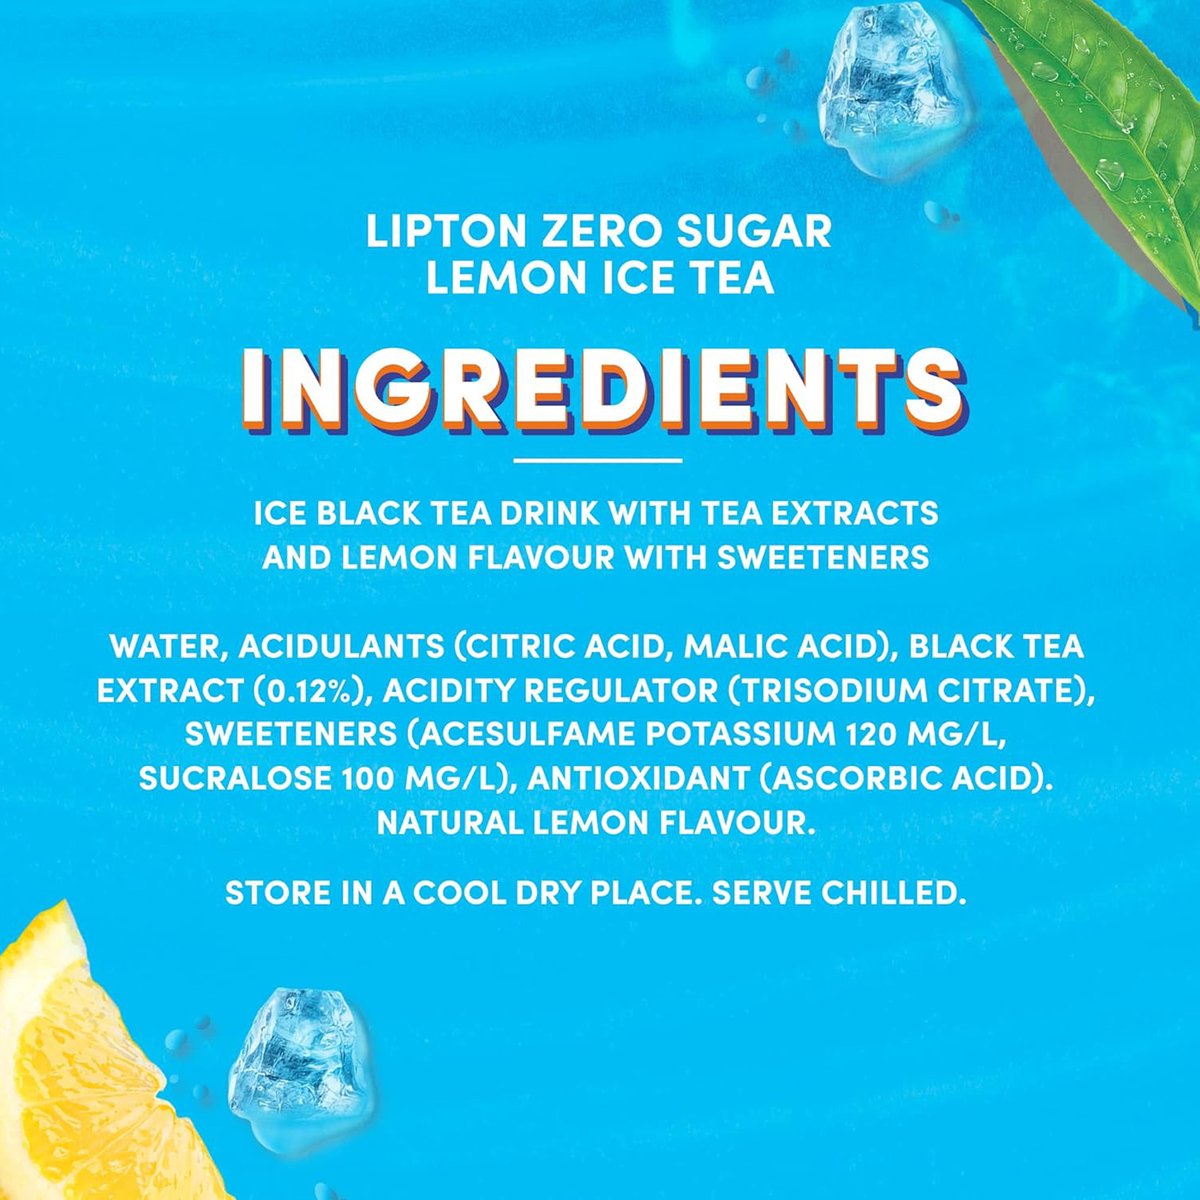 ليبتون شاي الليمون المثلج خالي من السكر  6 × 320 مل